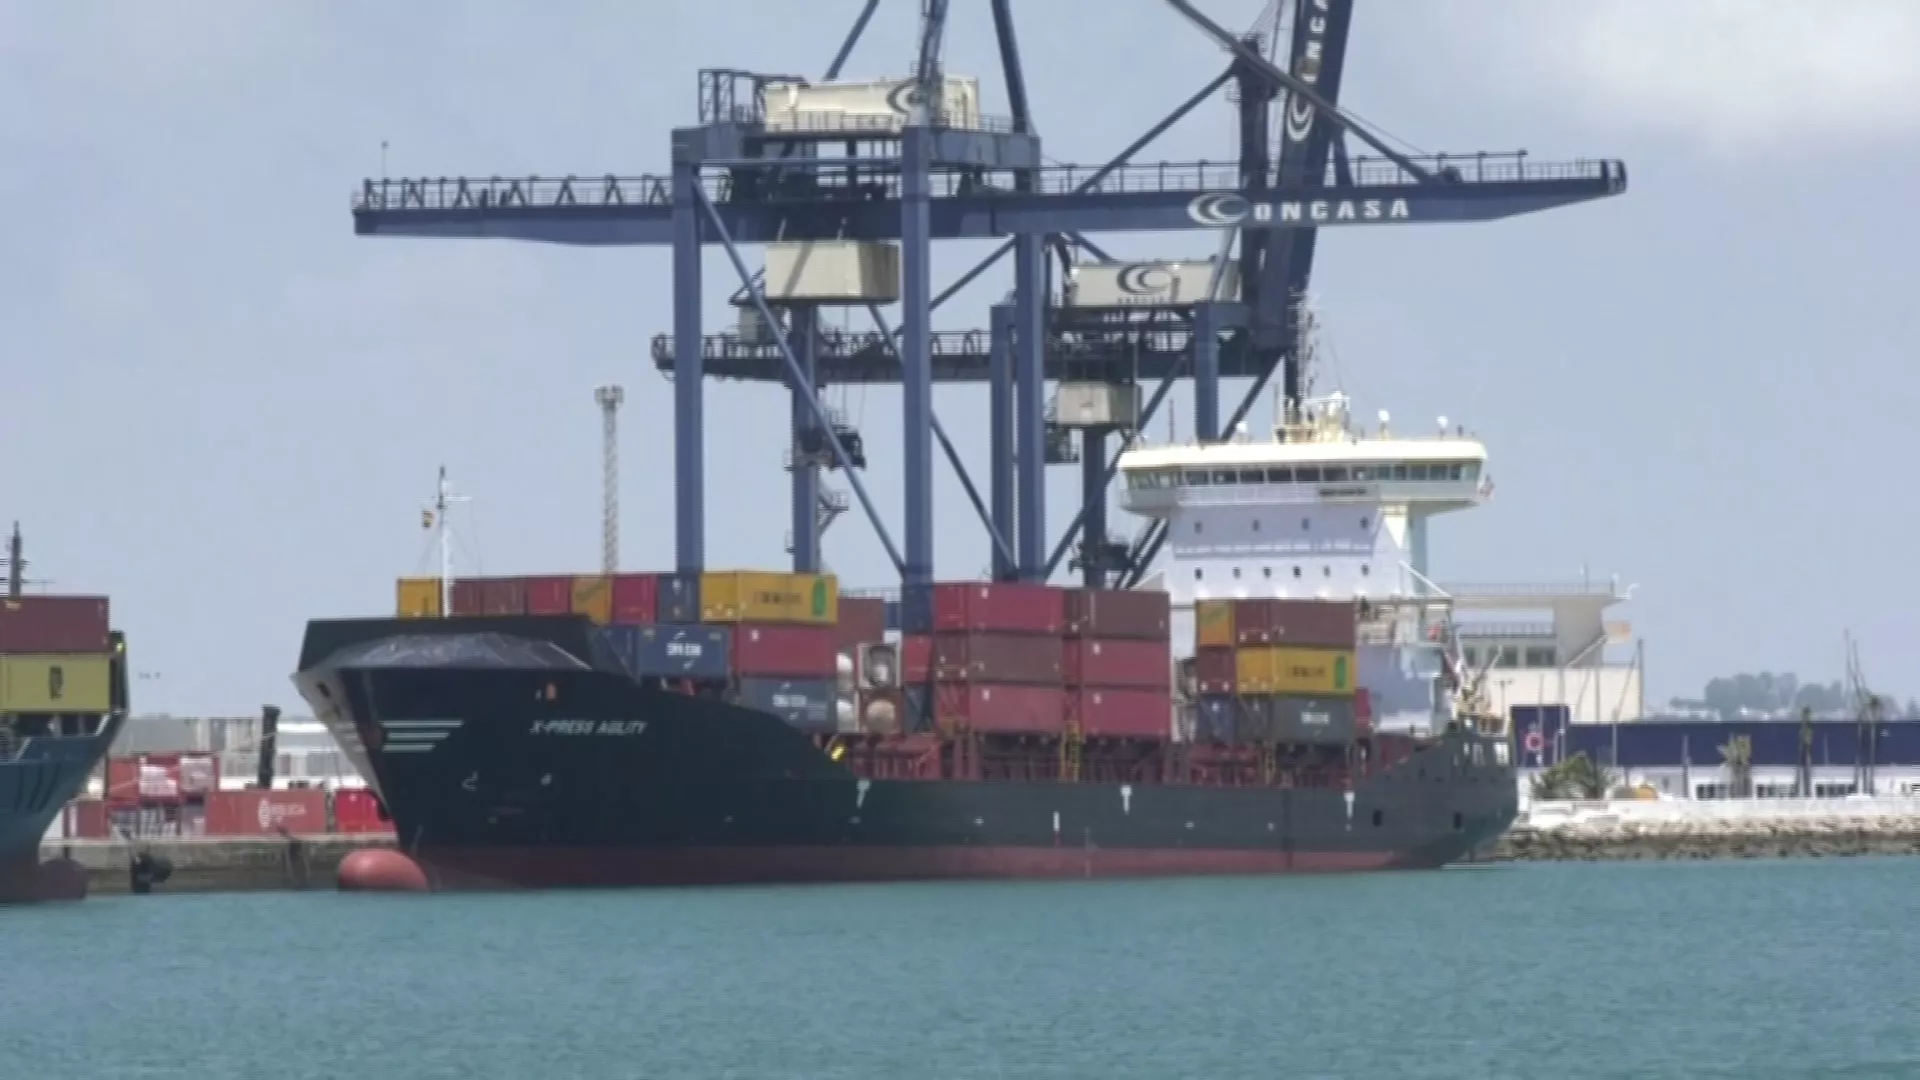 El puerto de Cádiz cierra en positivo este primer trimestre del año